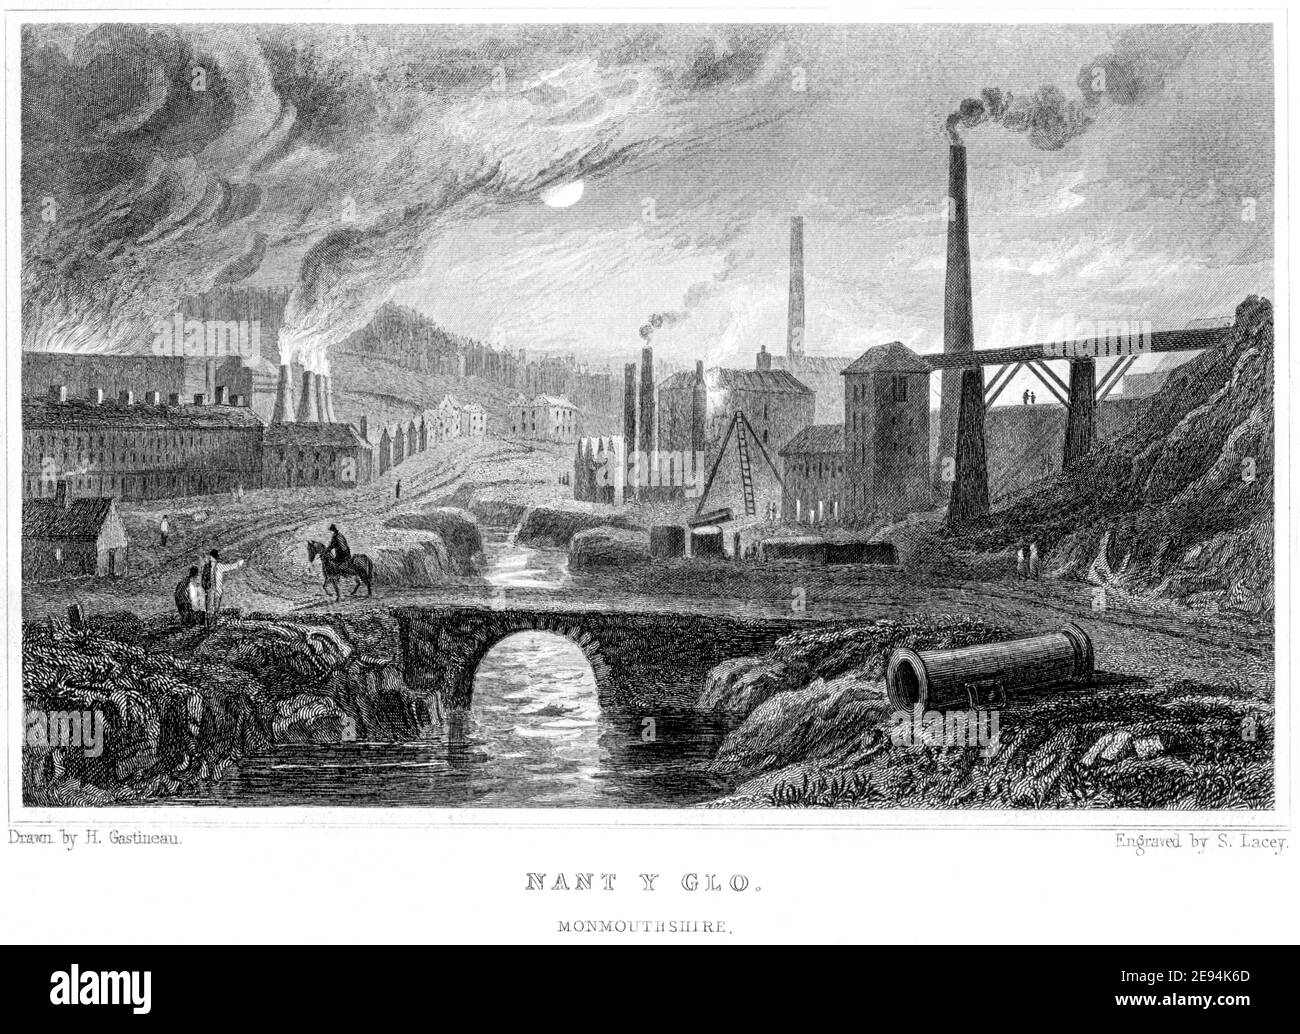 Gravur der Eisenhütte in Nant Y Glo, Monmouthshire, Wales, Großbritannien, gescannt in hoher Auflösung aus einem Buch, das 1854 veröffentlicht wurde. Für urheberrechtlich frei gehalten. Stockfoto